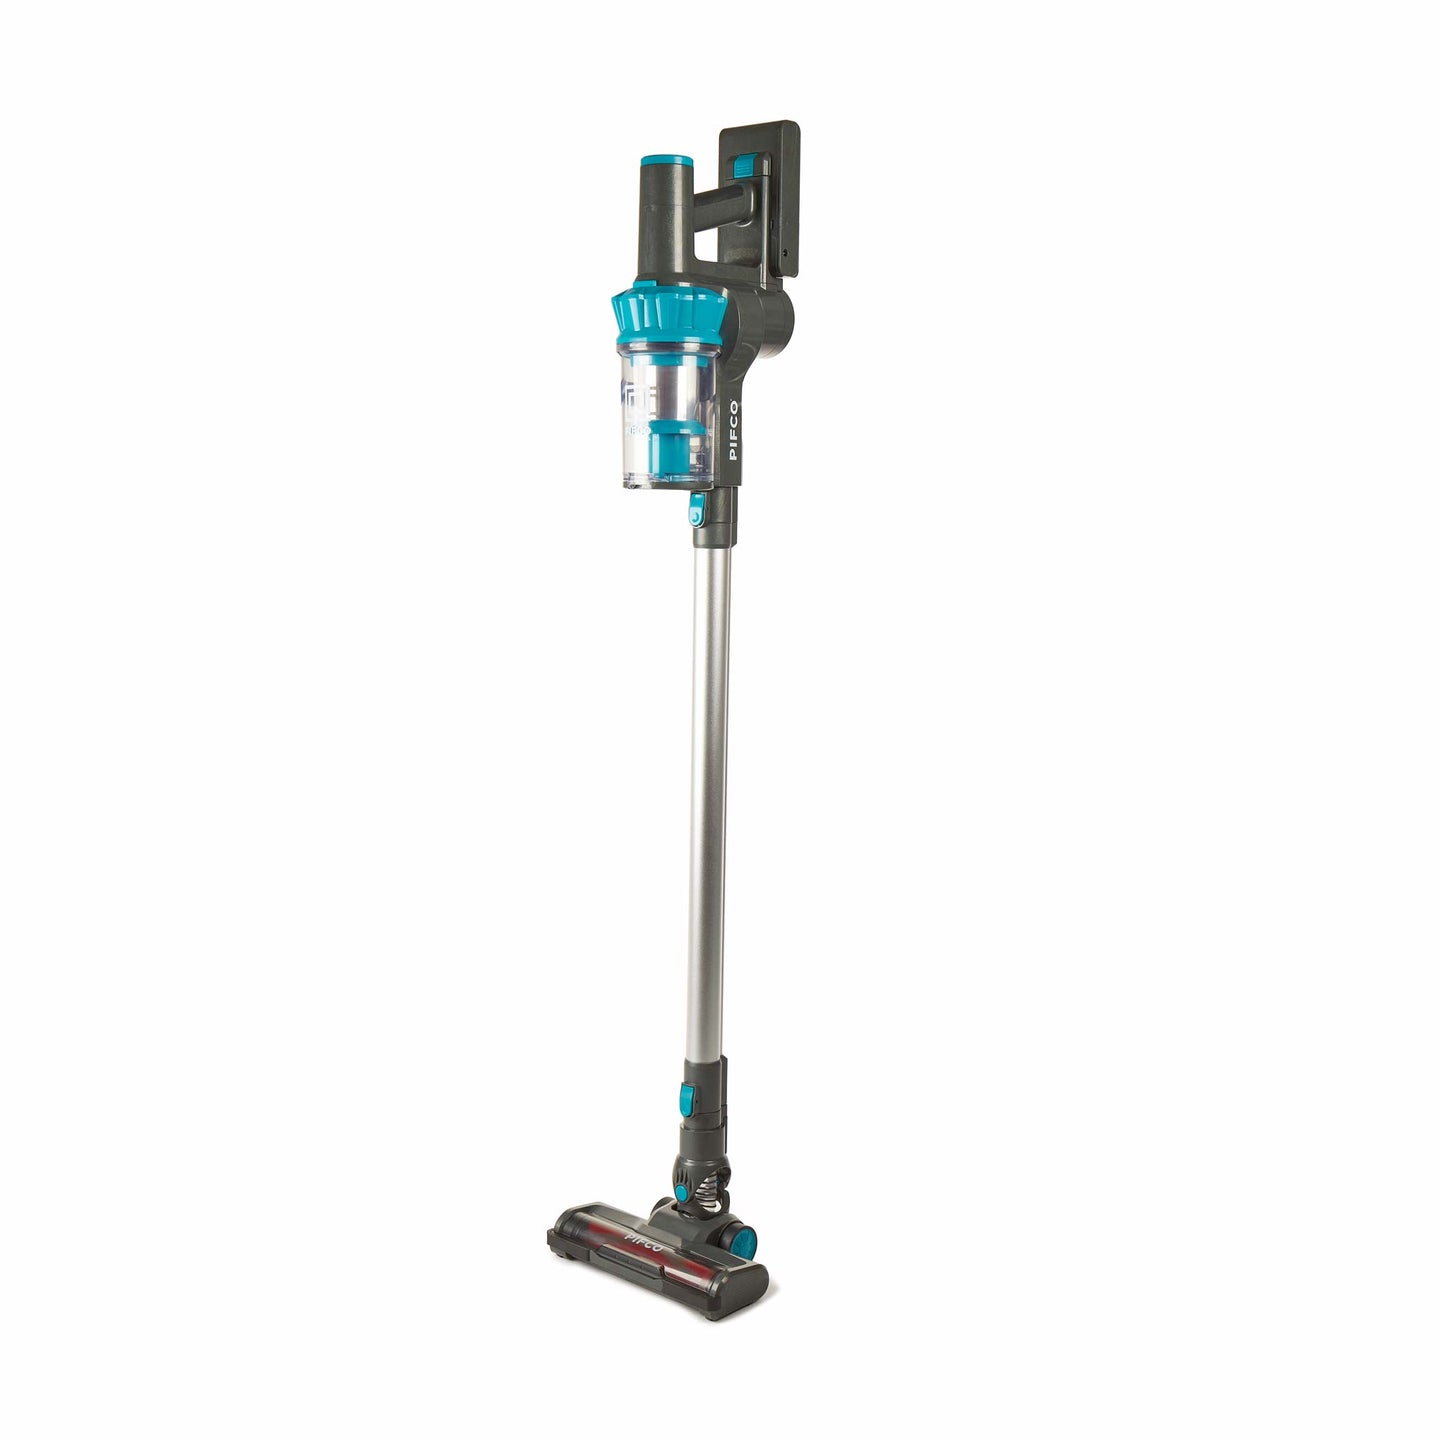 PIFCO 250W Pet Pro Cordless Rechargable Stick Vacuum